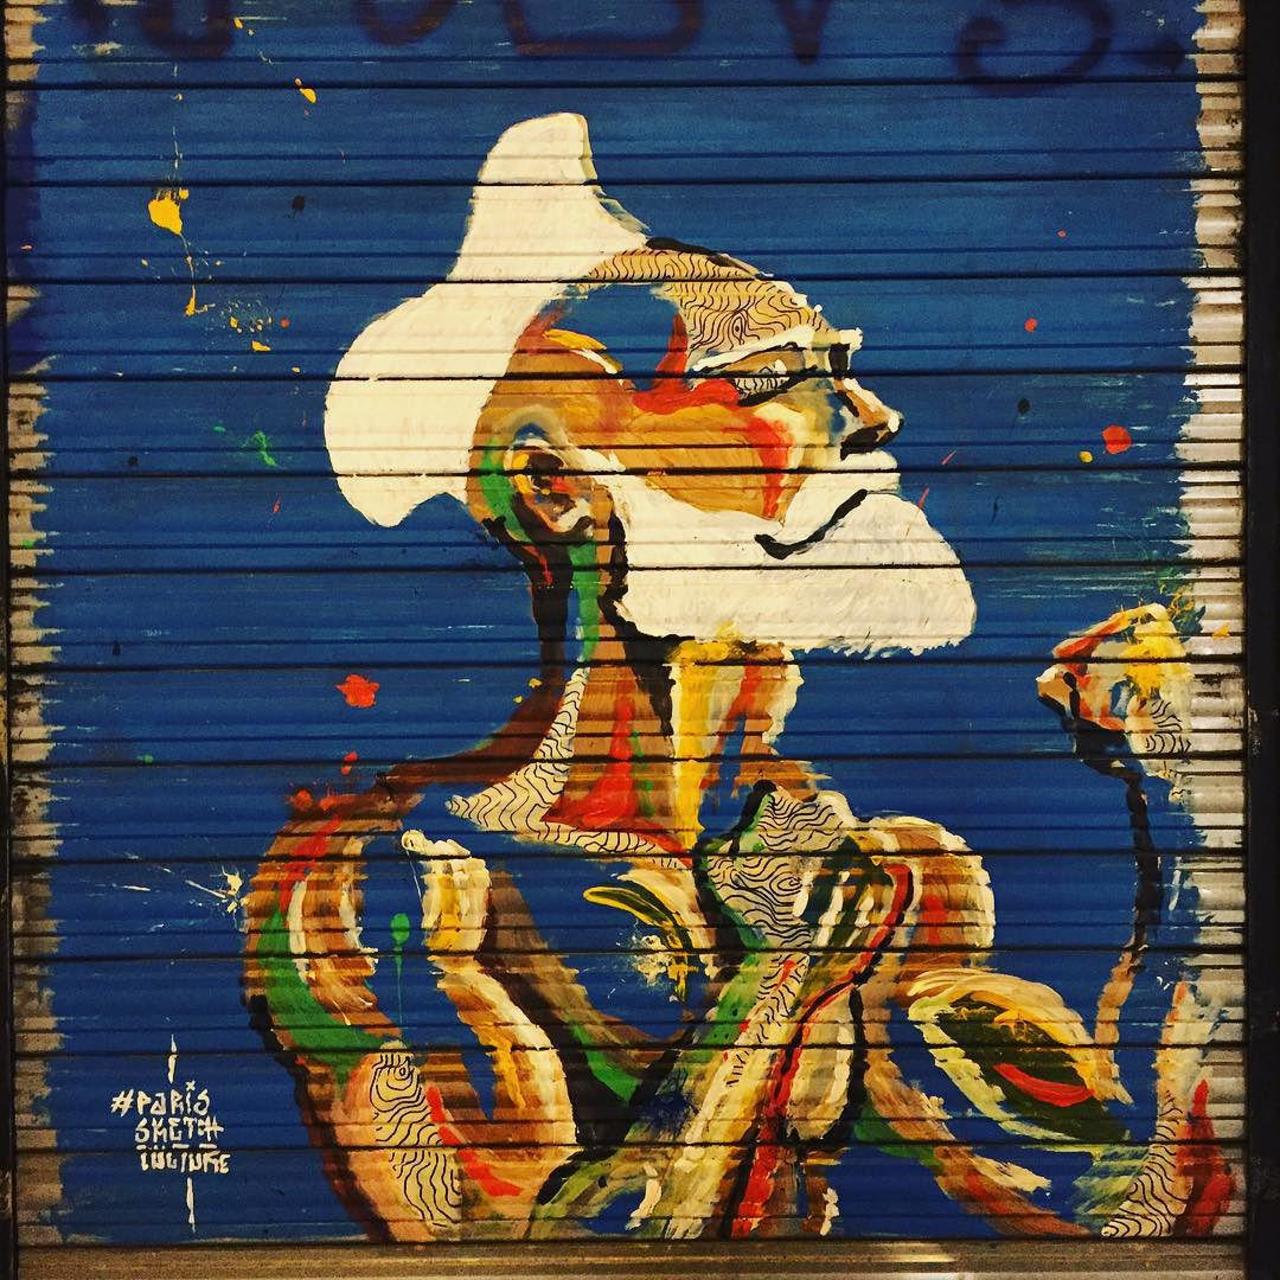 #Paris #graffiti photo by @ijustdontknow http://ift.tt/1MV7rDp #StreetArt http://t.co/8lg5m6eO9M